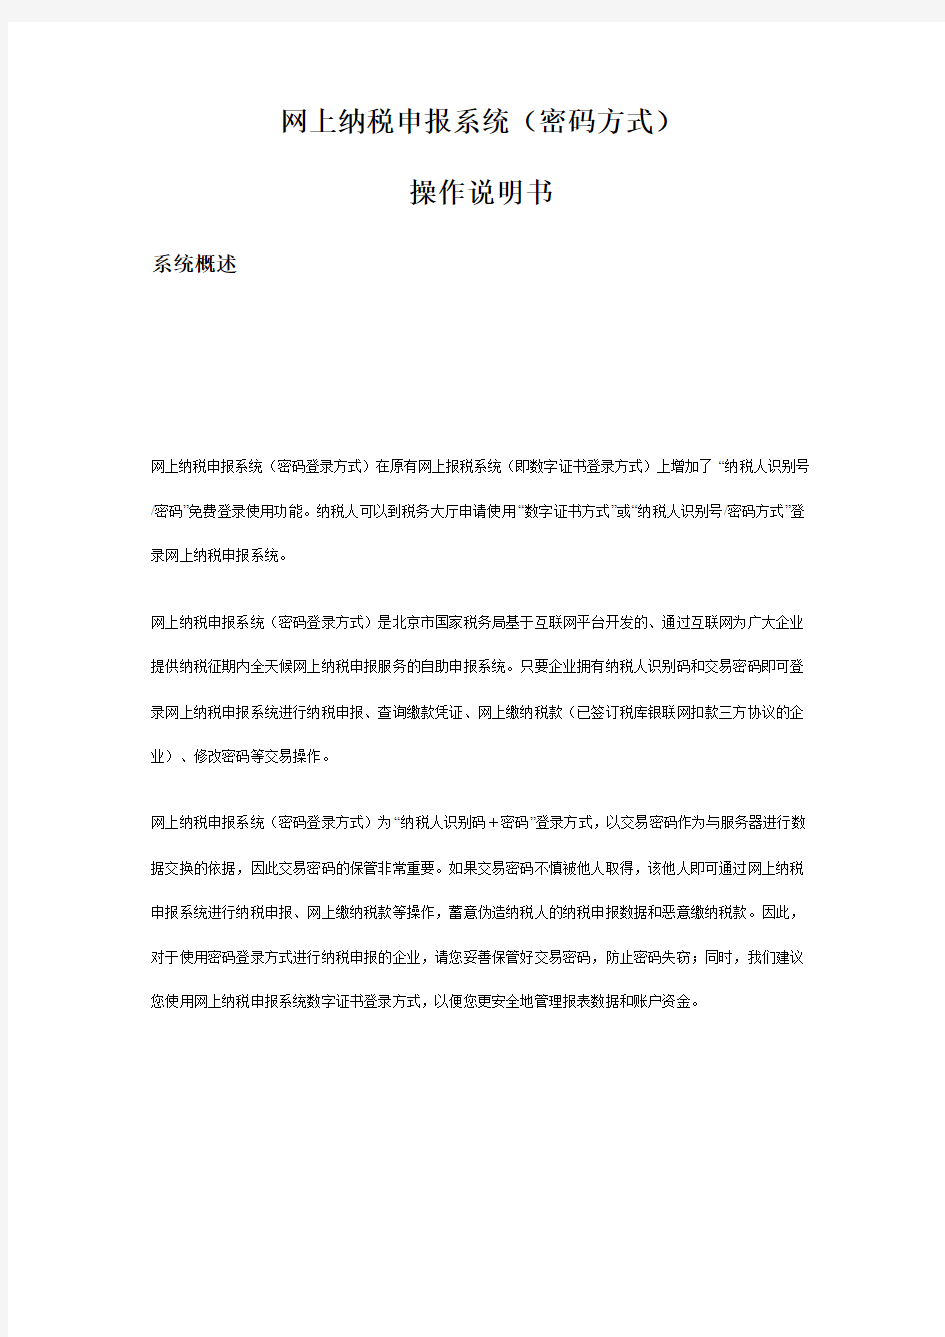 北京国税网上纳税申报系统(密码方式)说明书